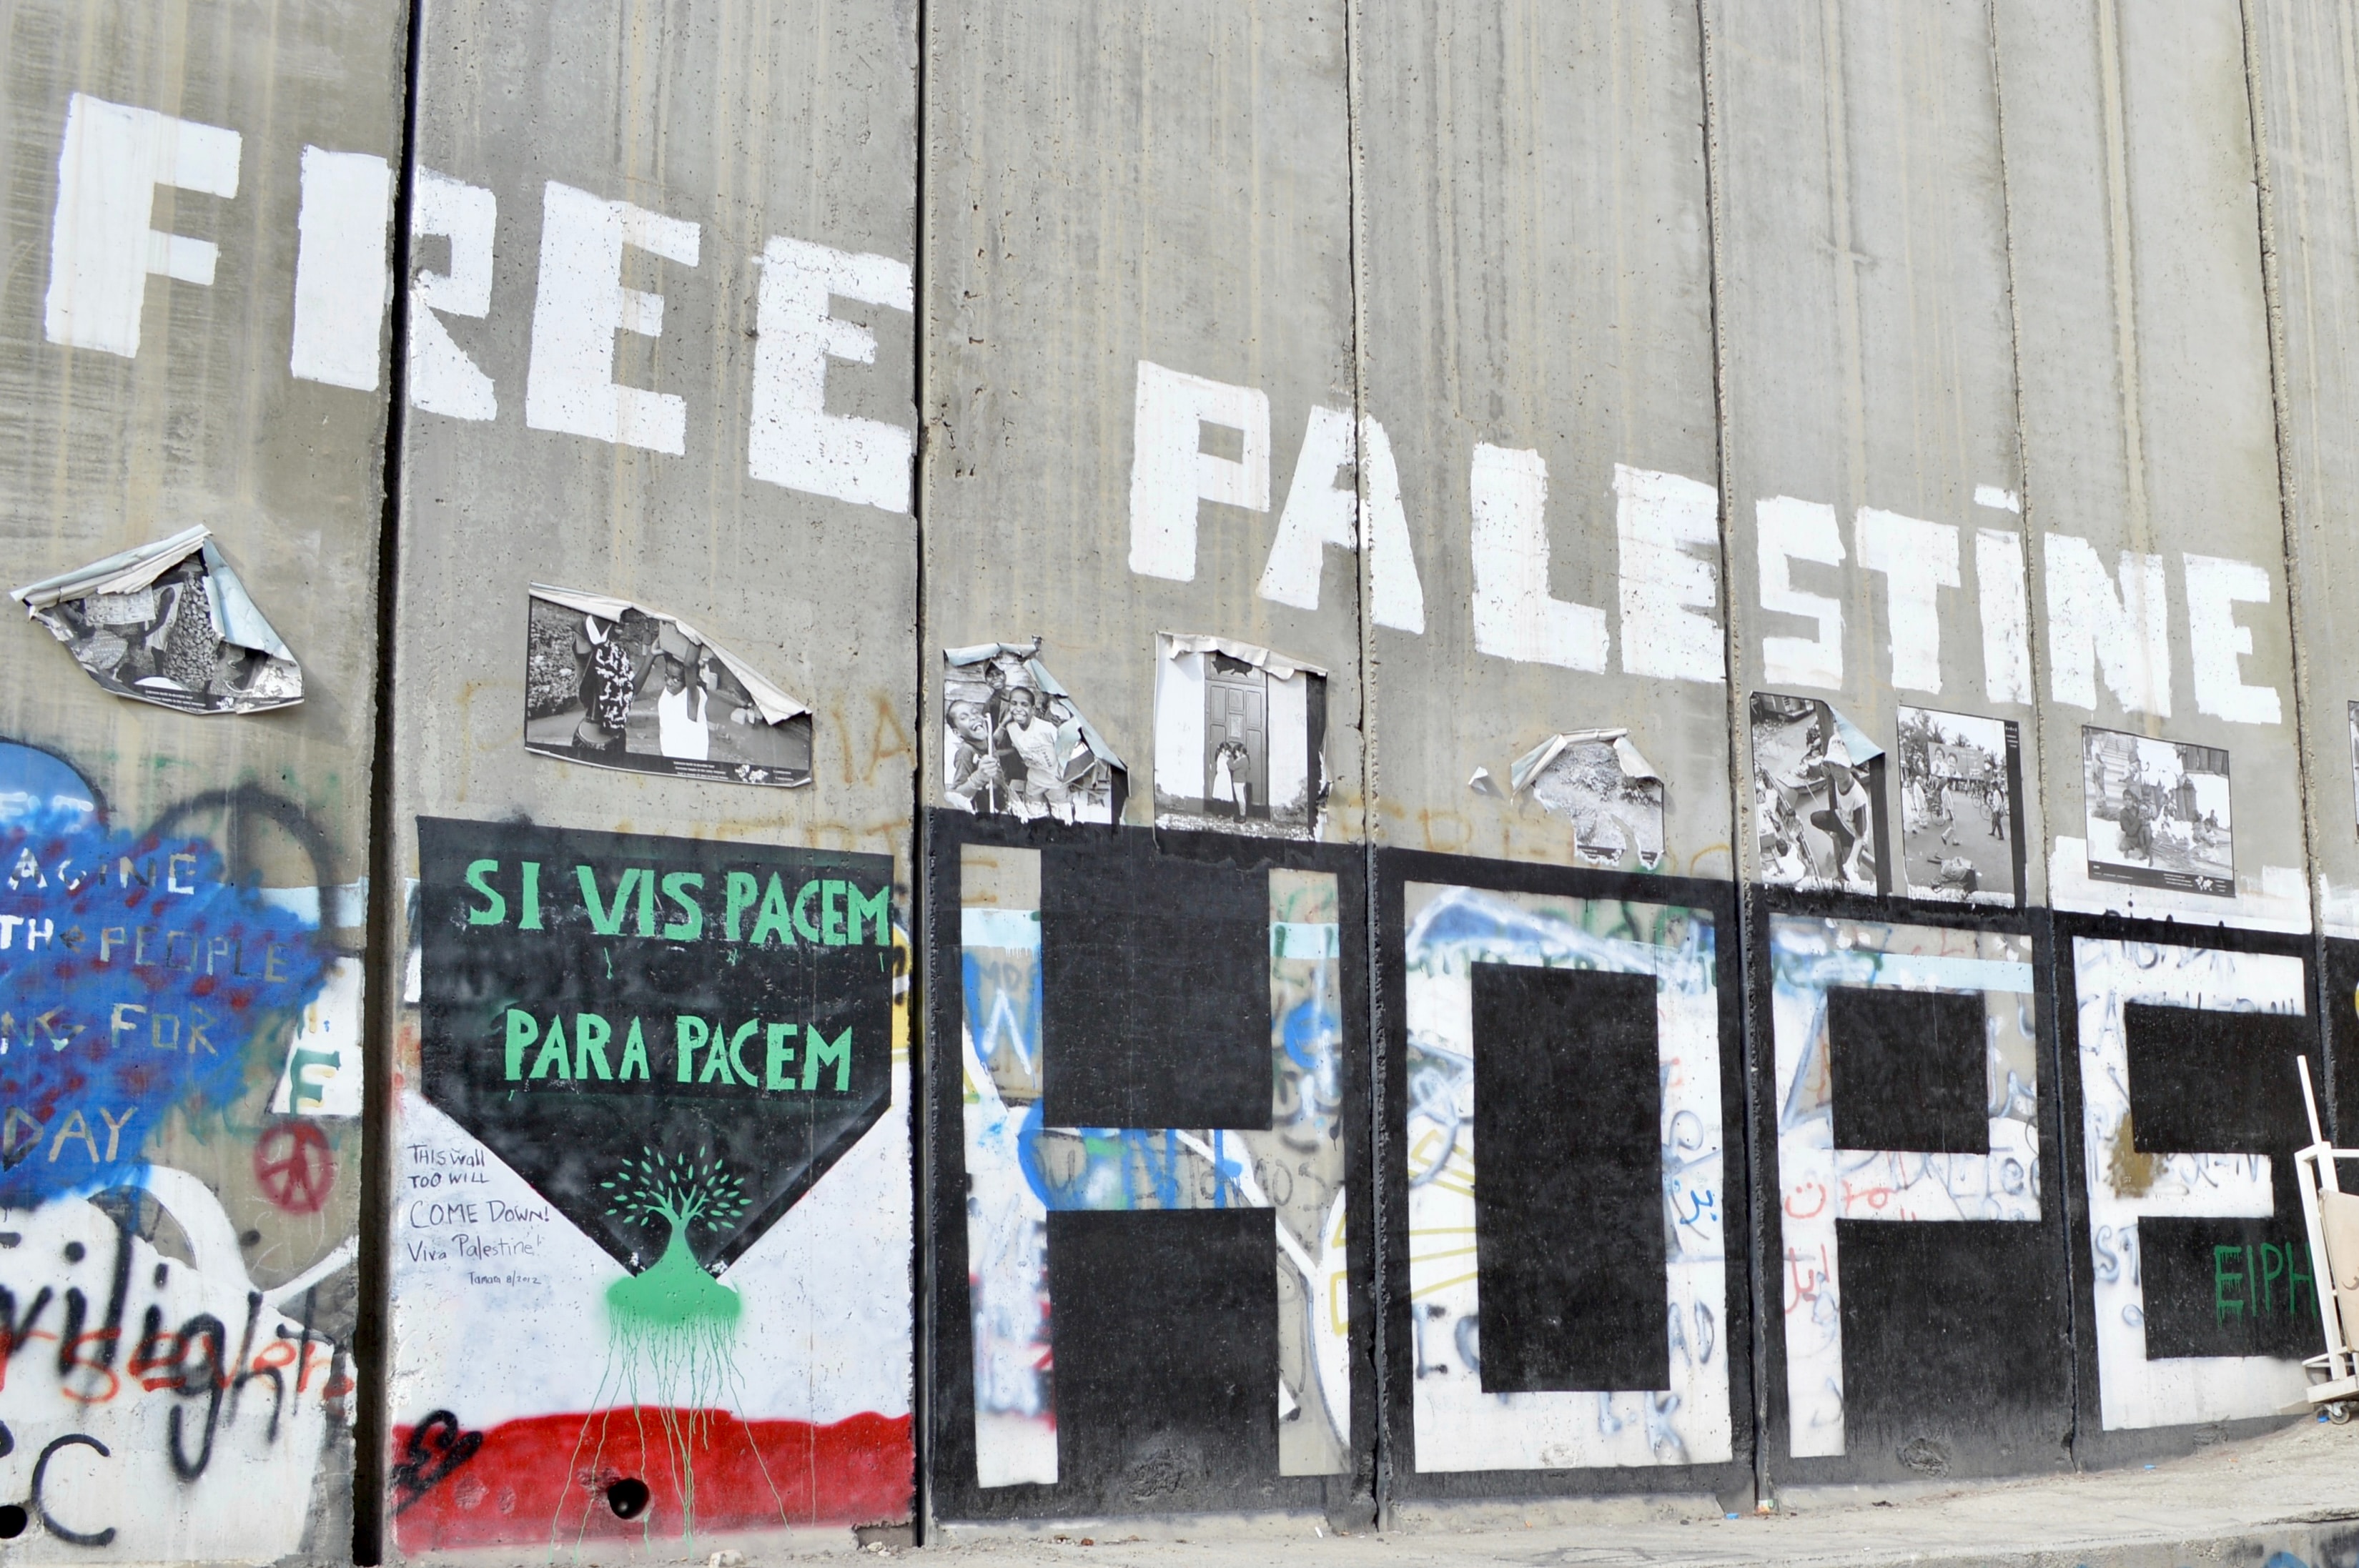 Duvarda 'Free Palestine' ve 'Hope' yazılaması var.